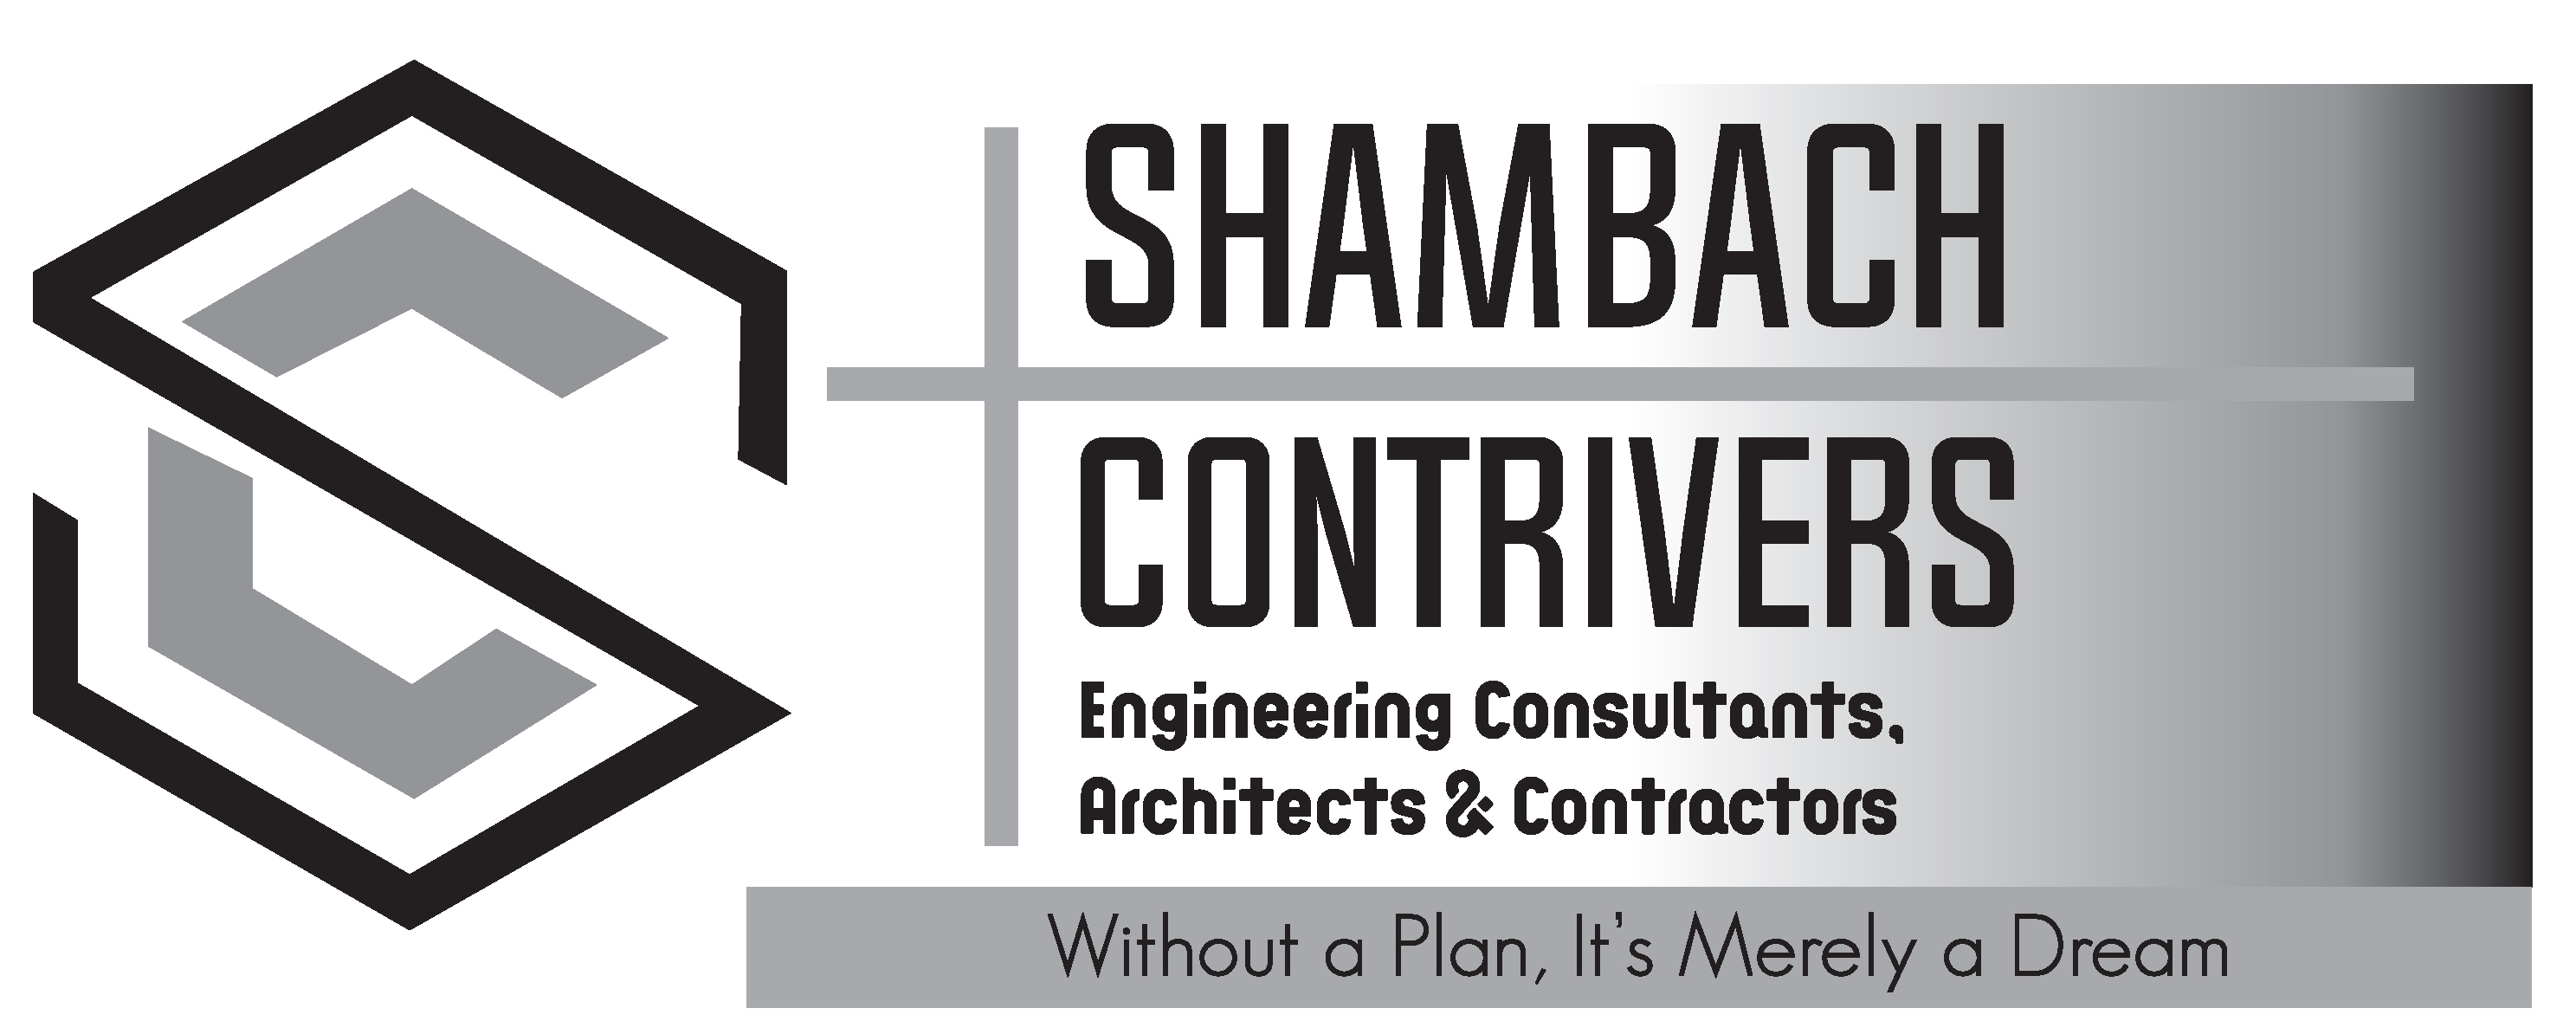 Shambach Contrivers-Shambach Contrivers